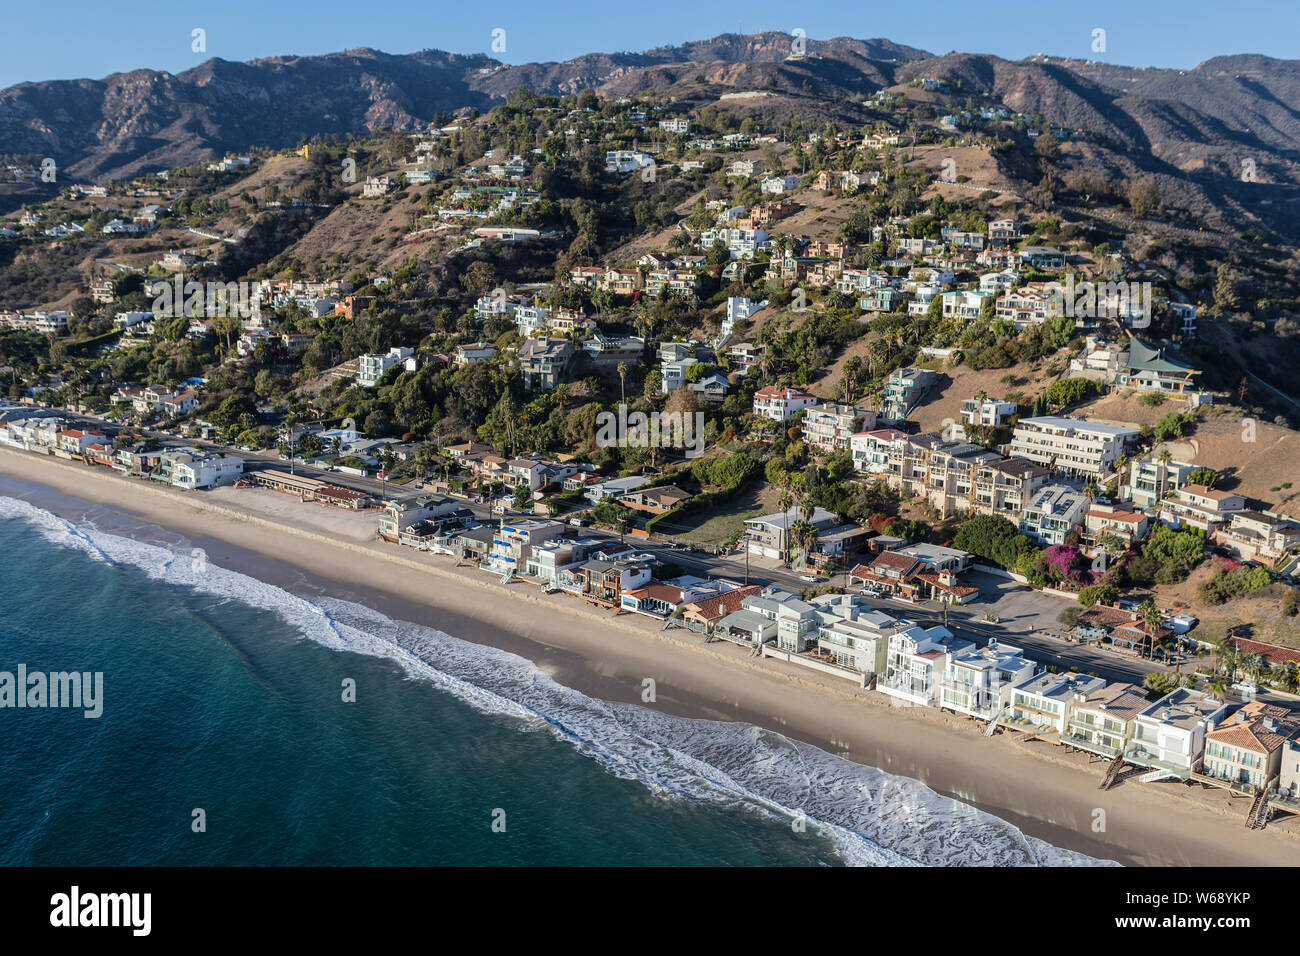 Vue aérienne de plages de Malibu, les maisons et les collines au nord de Santa Monica le Pacific Coast Highway dans le comté de Los Angeles, en Californie. Banque D'Images